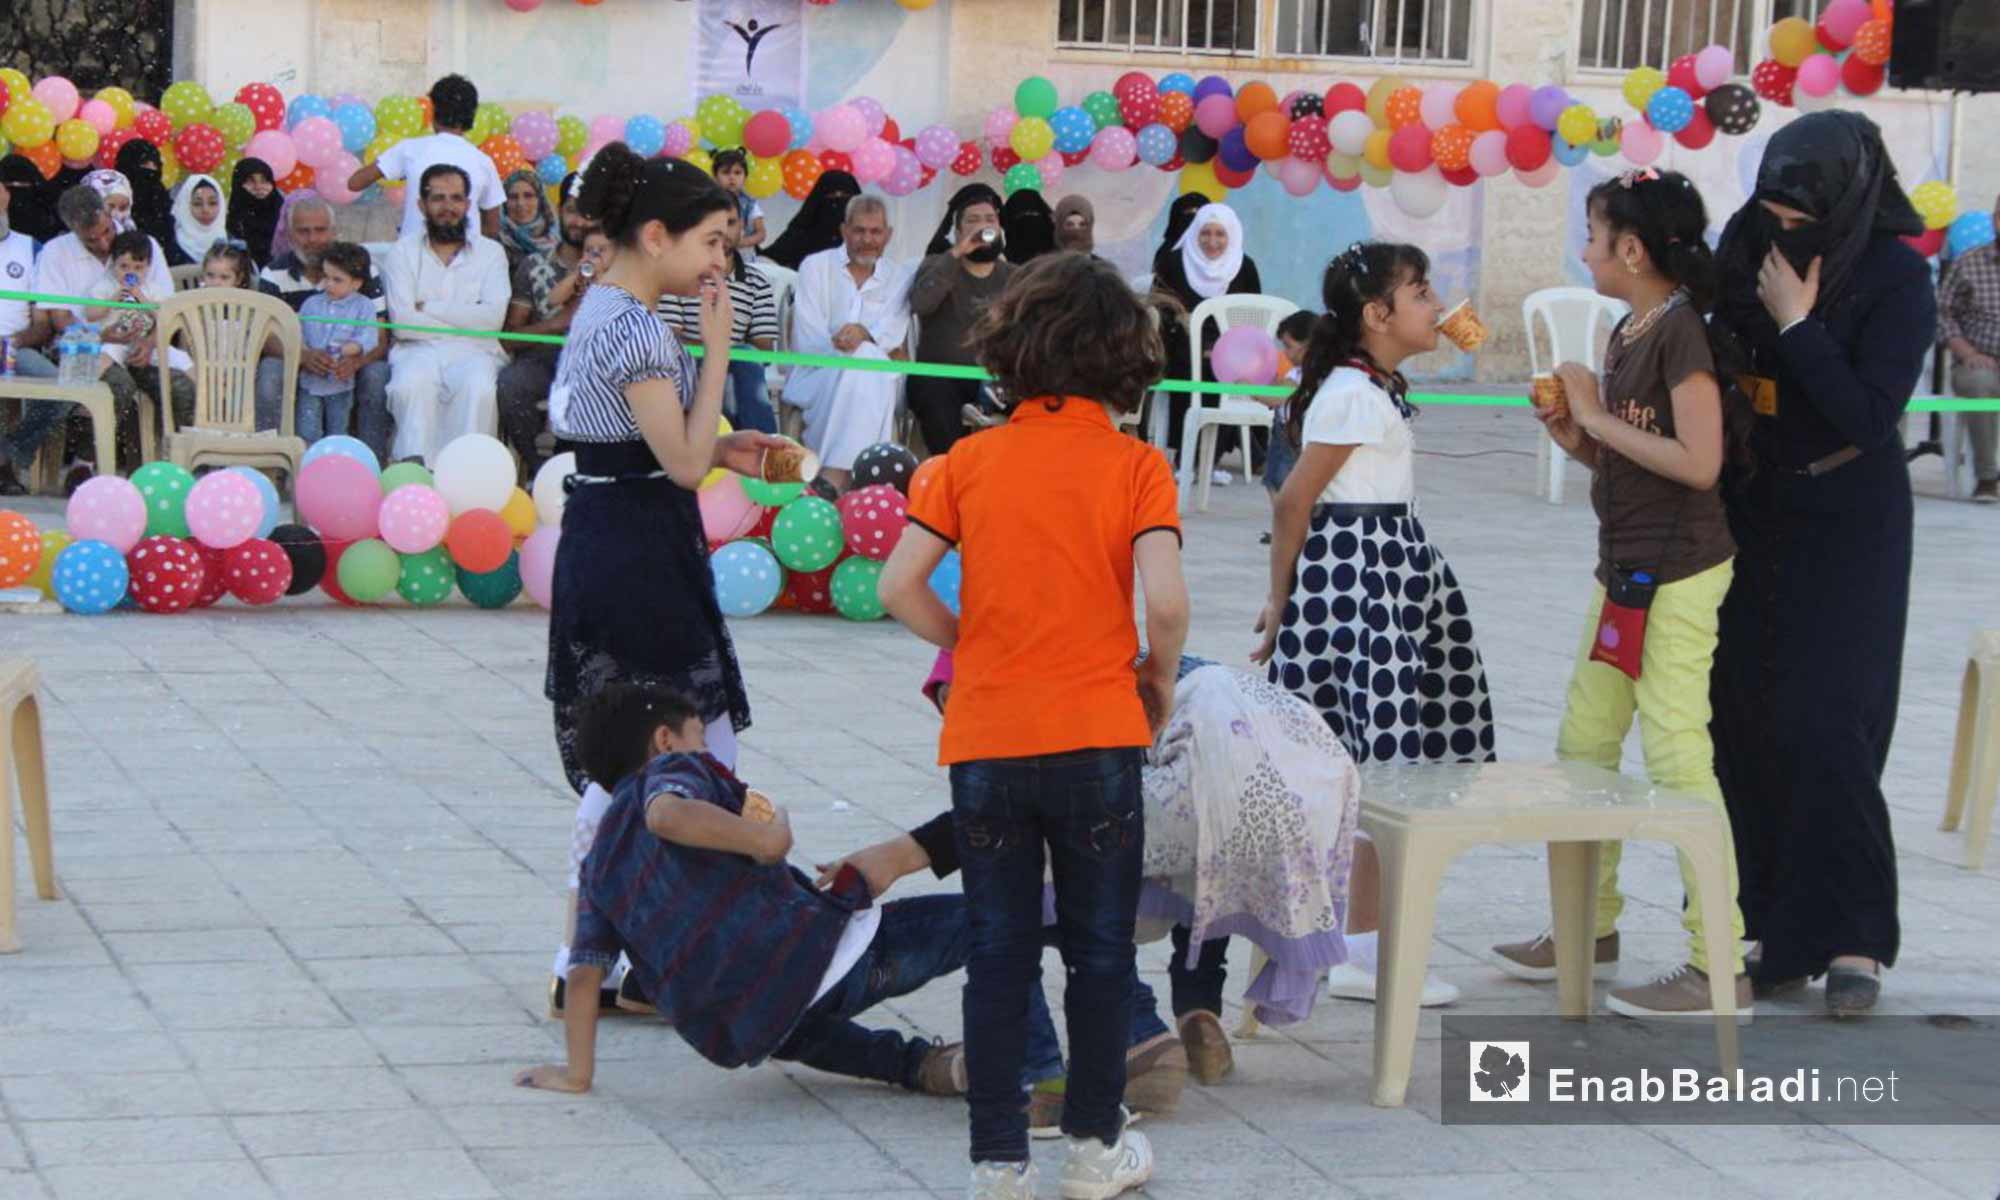 حفل لأطفال مهجرين ريف حمص بمناسبة عيد الفطر في مدينة اريحا بإدلب - 17 حزيران 2018 (عنب بلدي)